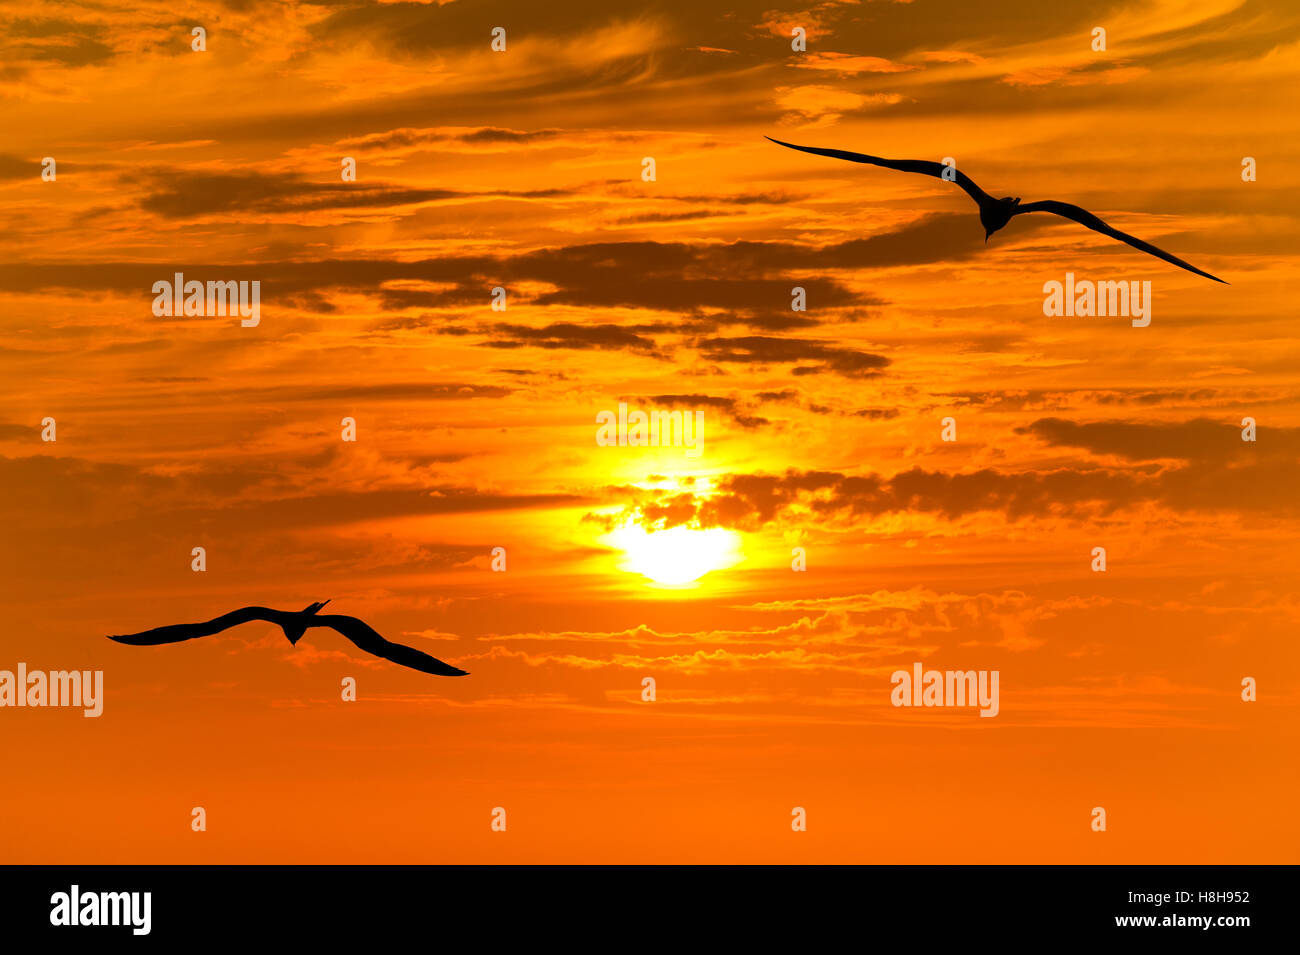 Silhouettes d'oiseaux battant la silhouette est deux oiseaux qui volent ensemble contre un ciel coucher de soleil doré orange vif. Banque D'Images